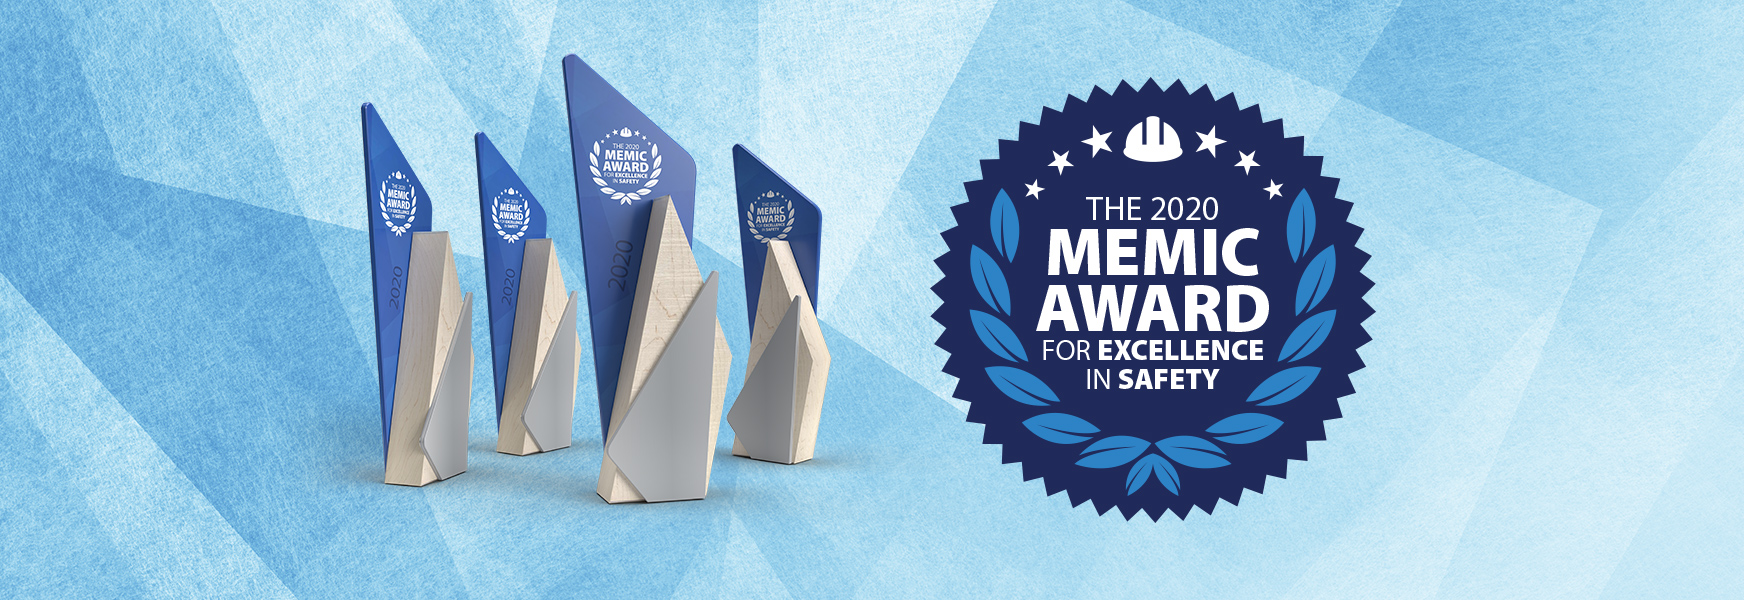 MEMIC Safety Award